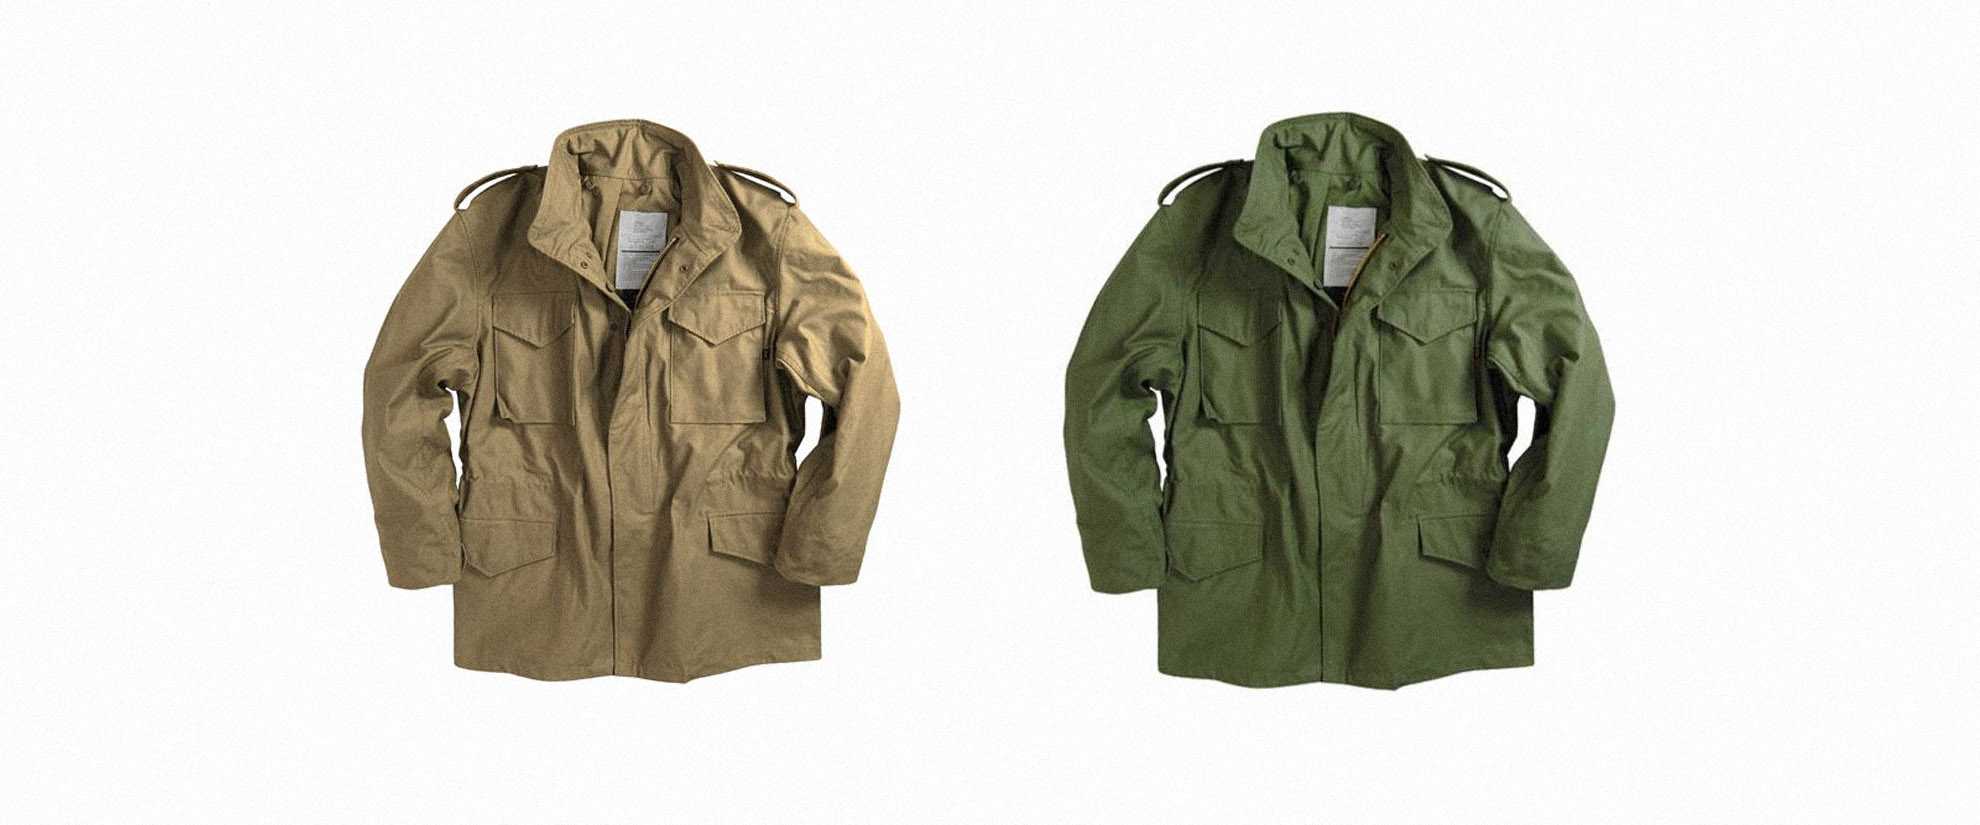 Полевая куртка M-1965 M65 была разработана специально для Вооруженных Сил США и является самой популярной военной курткой в истории Какое разнообразие моделей и расцветок существует Отзывы о куртке